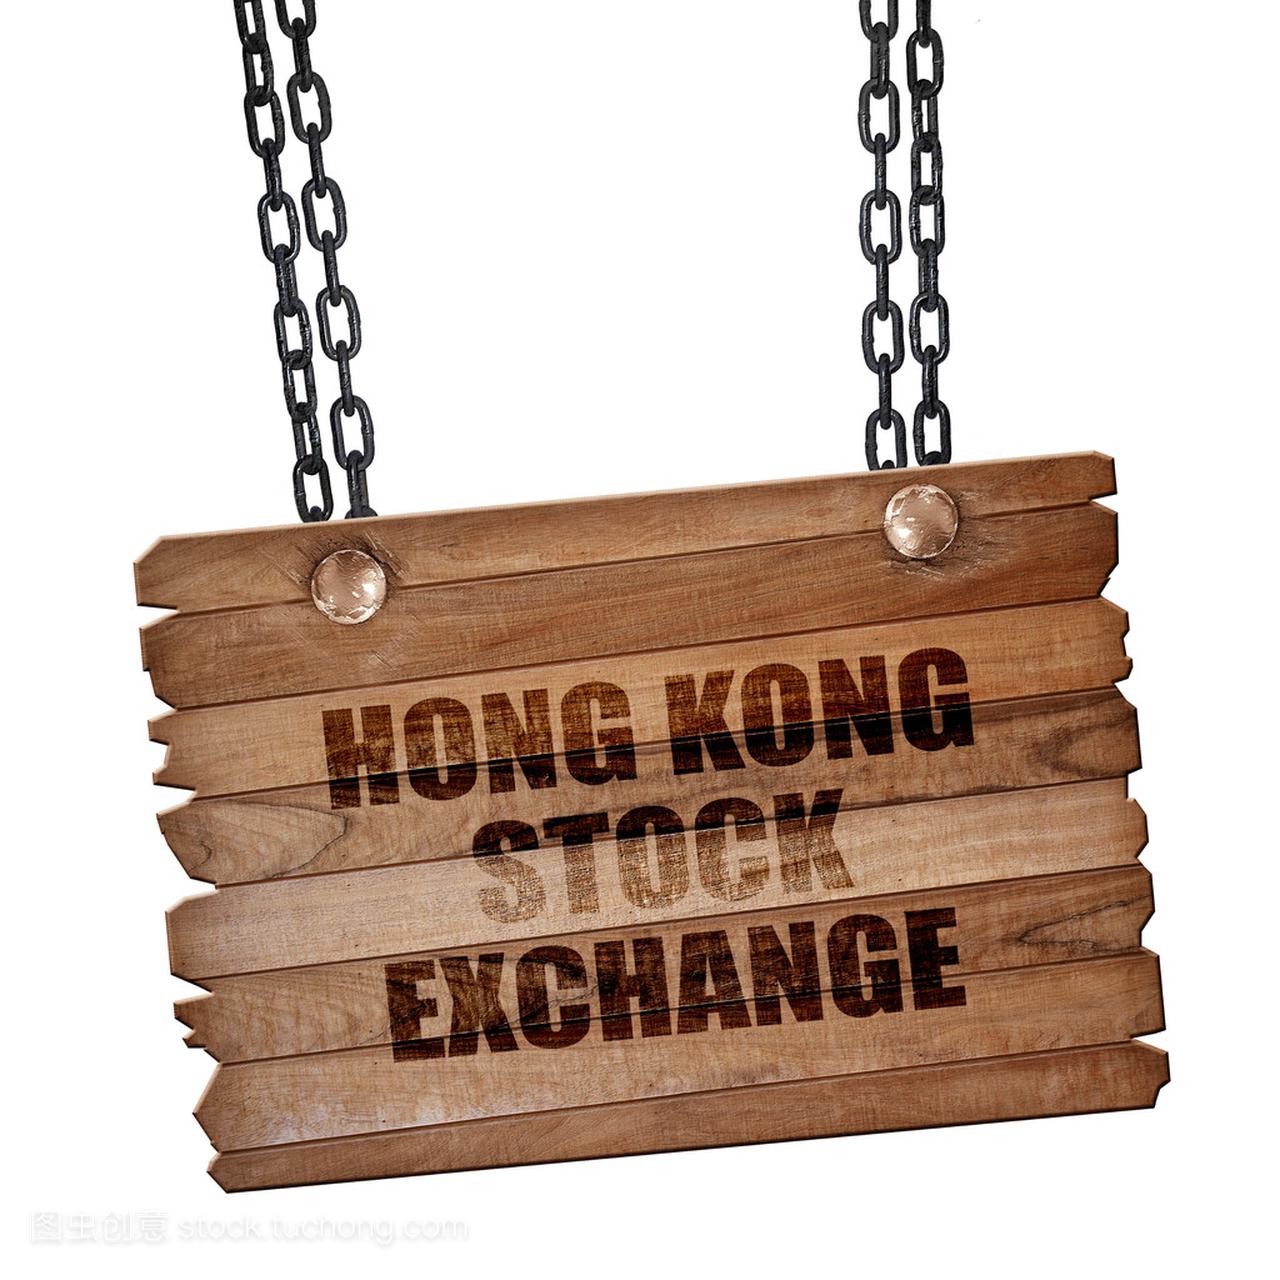 香港股票交易所,3d 渲染,木板上的垃圾